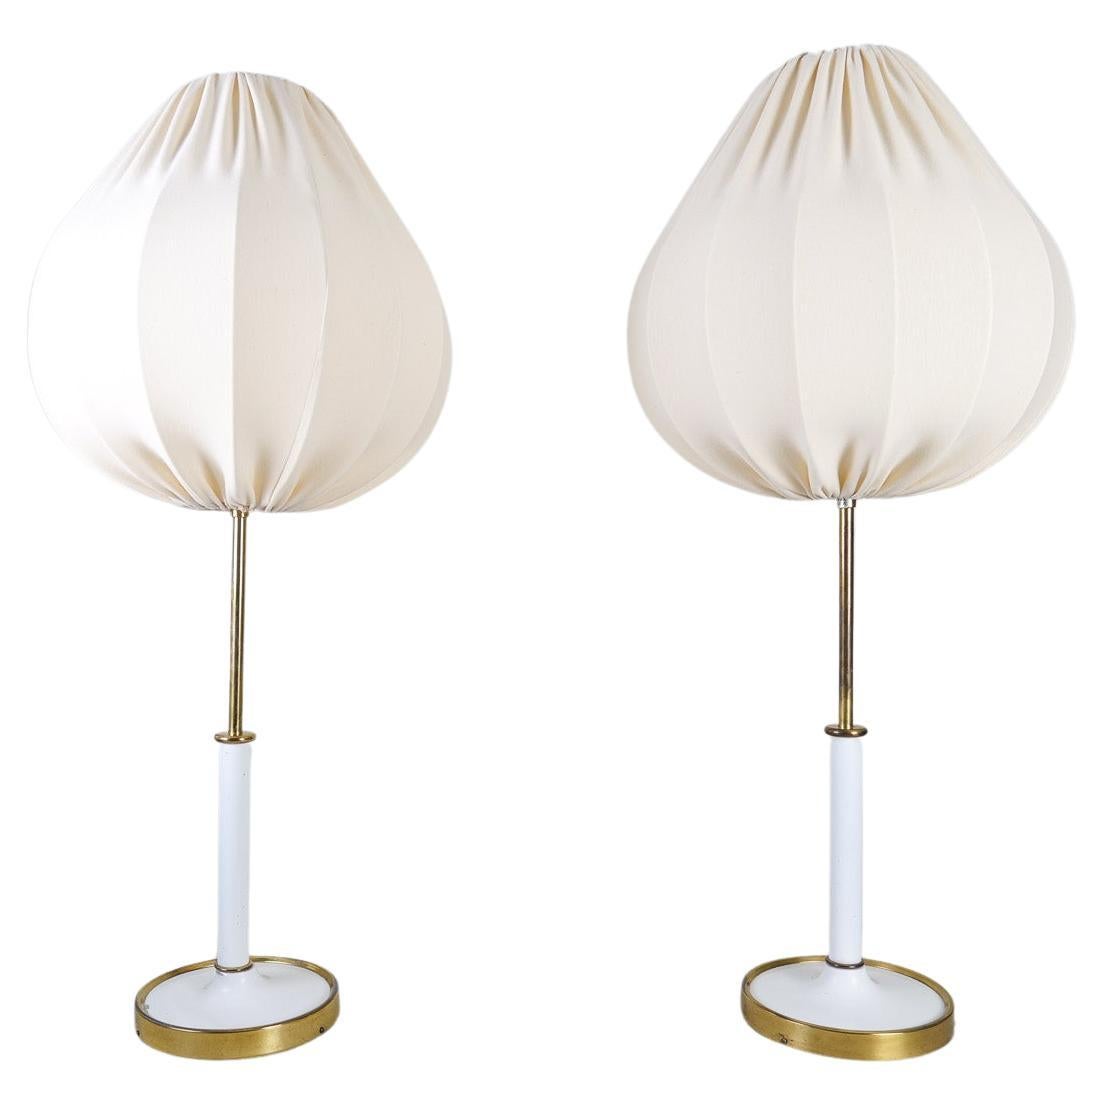 Midcentury Modern Table Lamps Model 2466  by Josef Frank , Svenskt Tenn Sweden